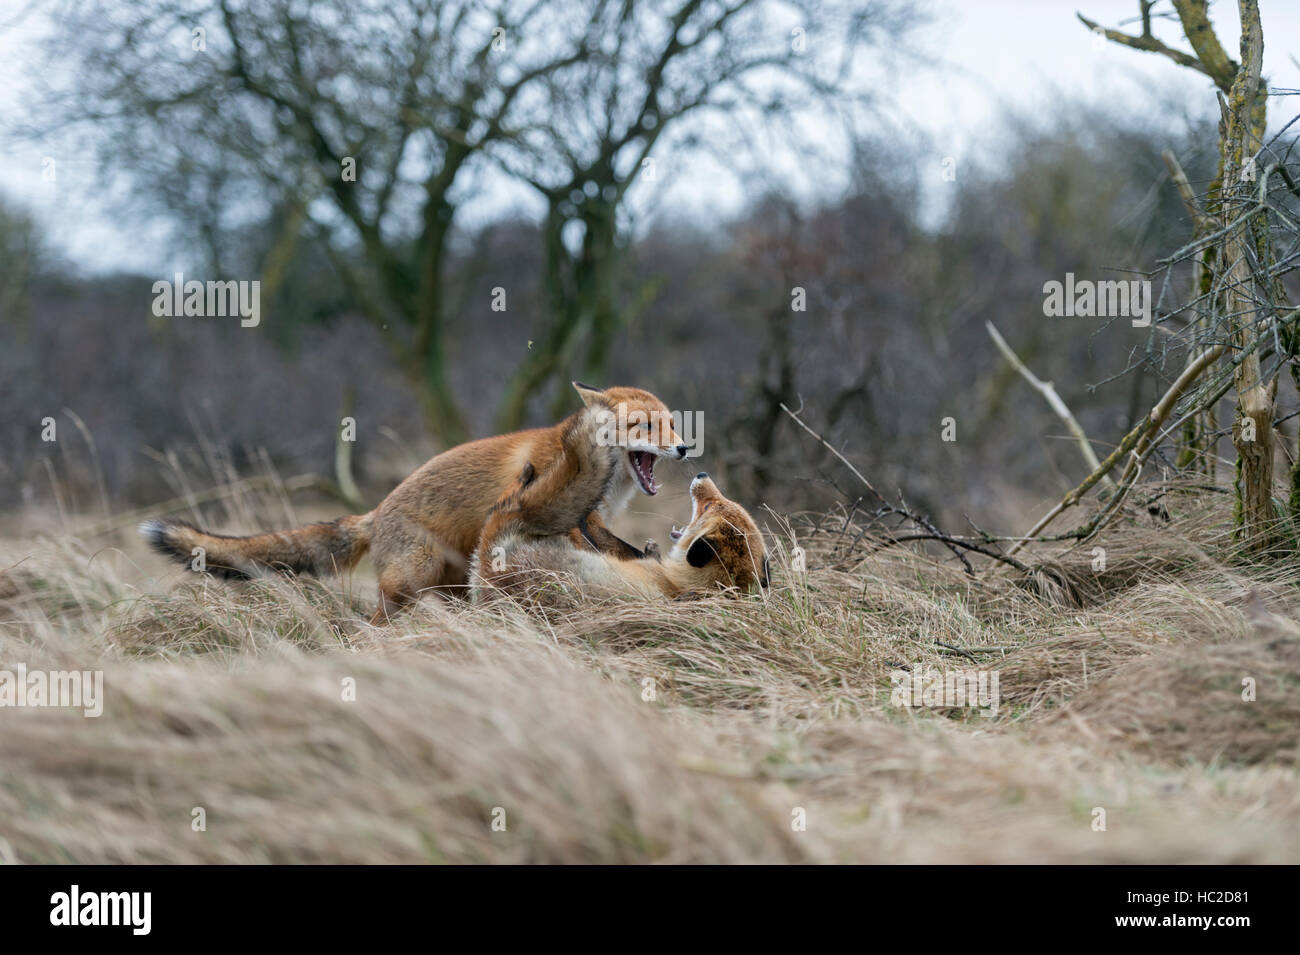 Le Renard roux / Rotfuechse ( Vulpes vulpes ) dans une lutte durant leur saison du rut en février, la faune de l'Europe. Banque D'Images